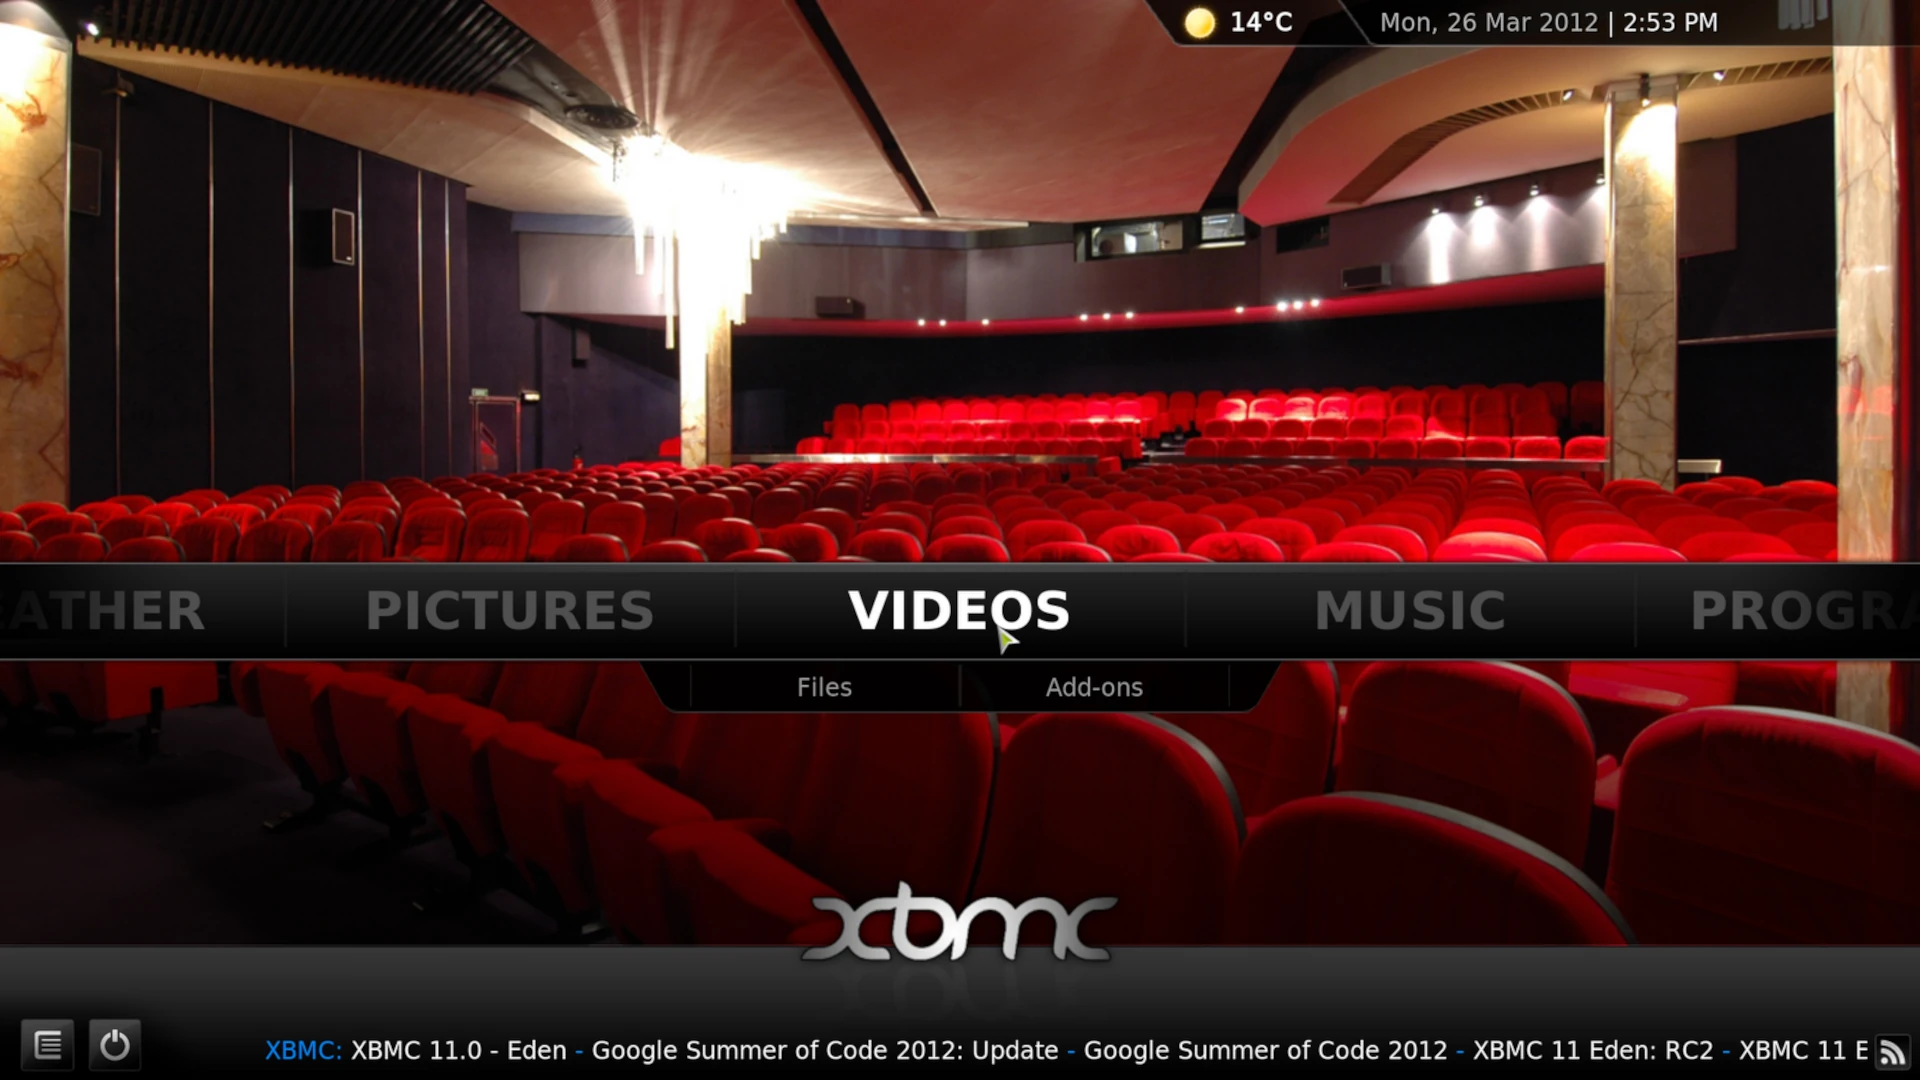 XBMC v10 "Dharma" Home Screen, 2012